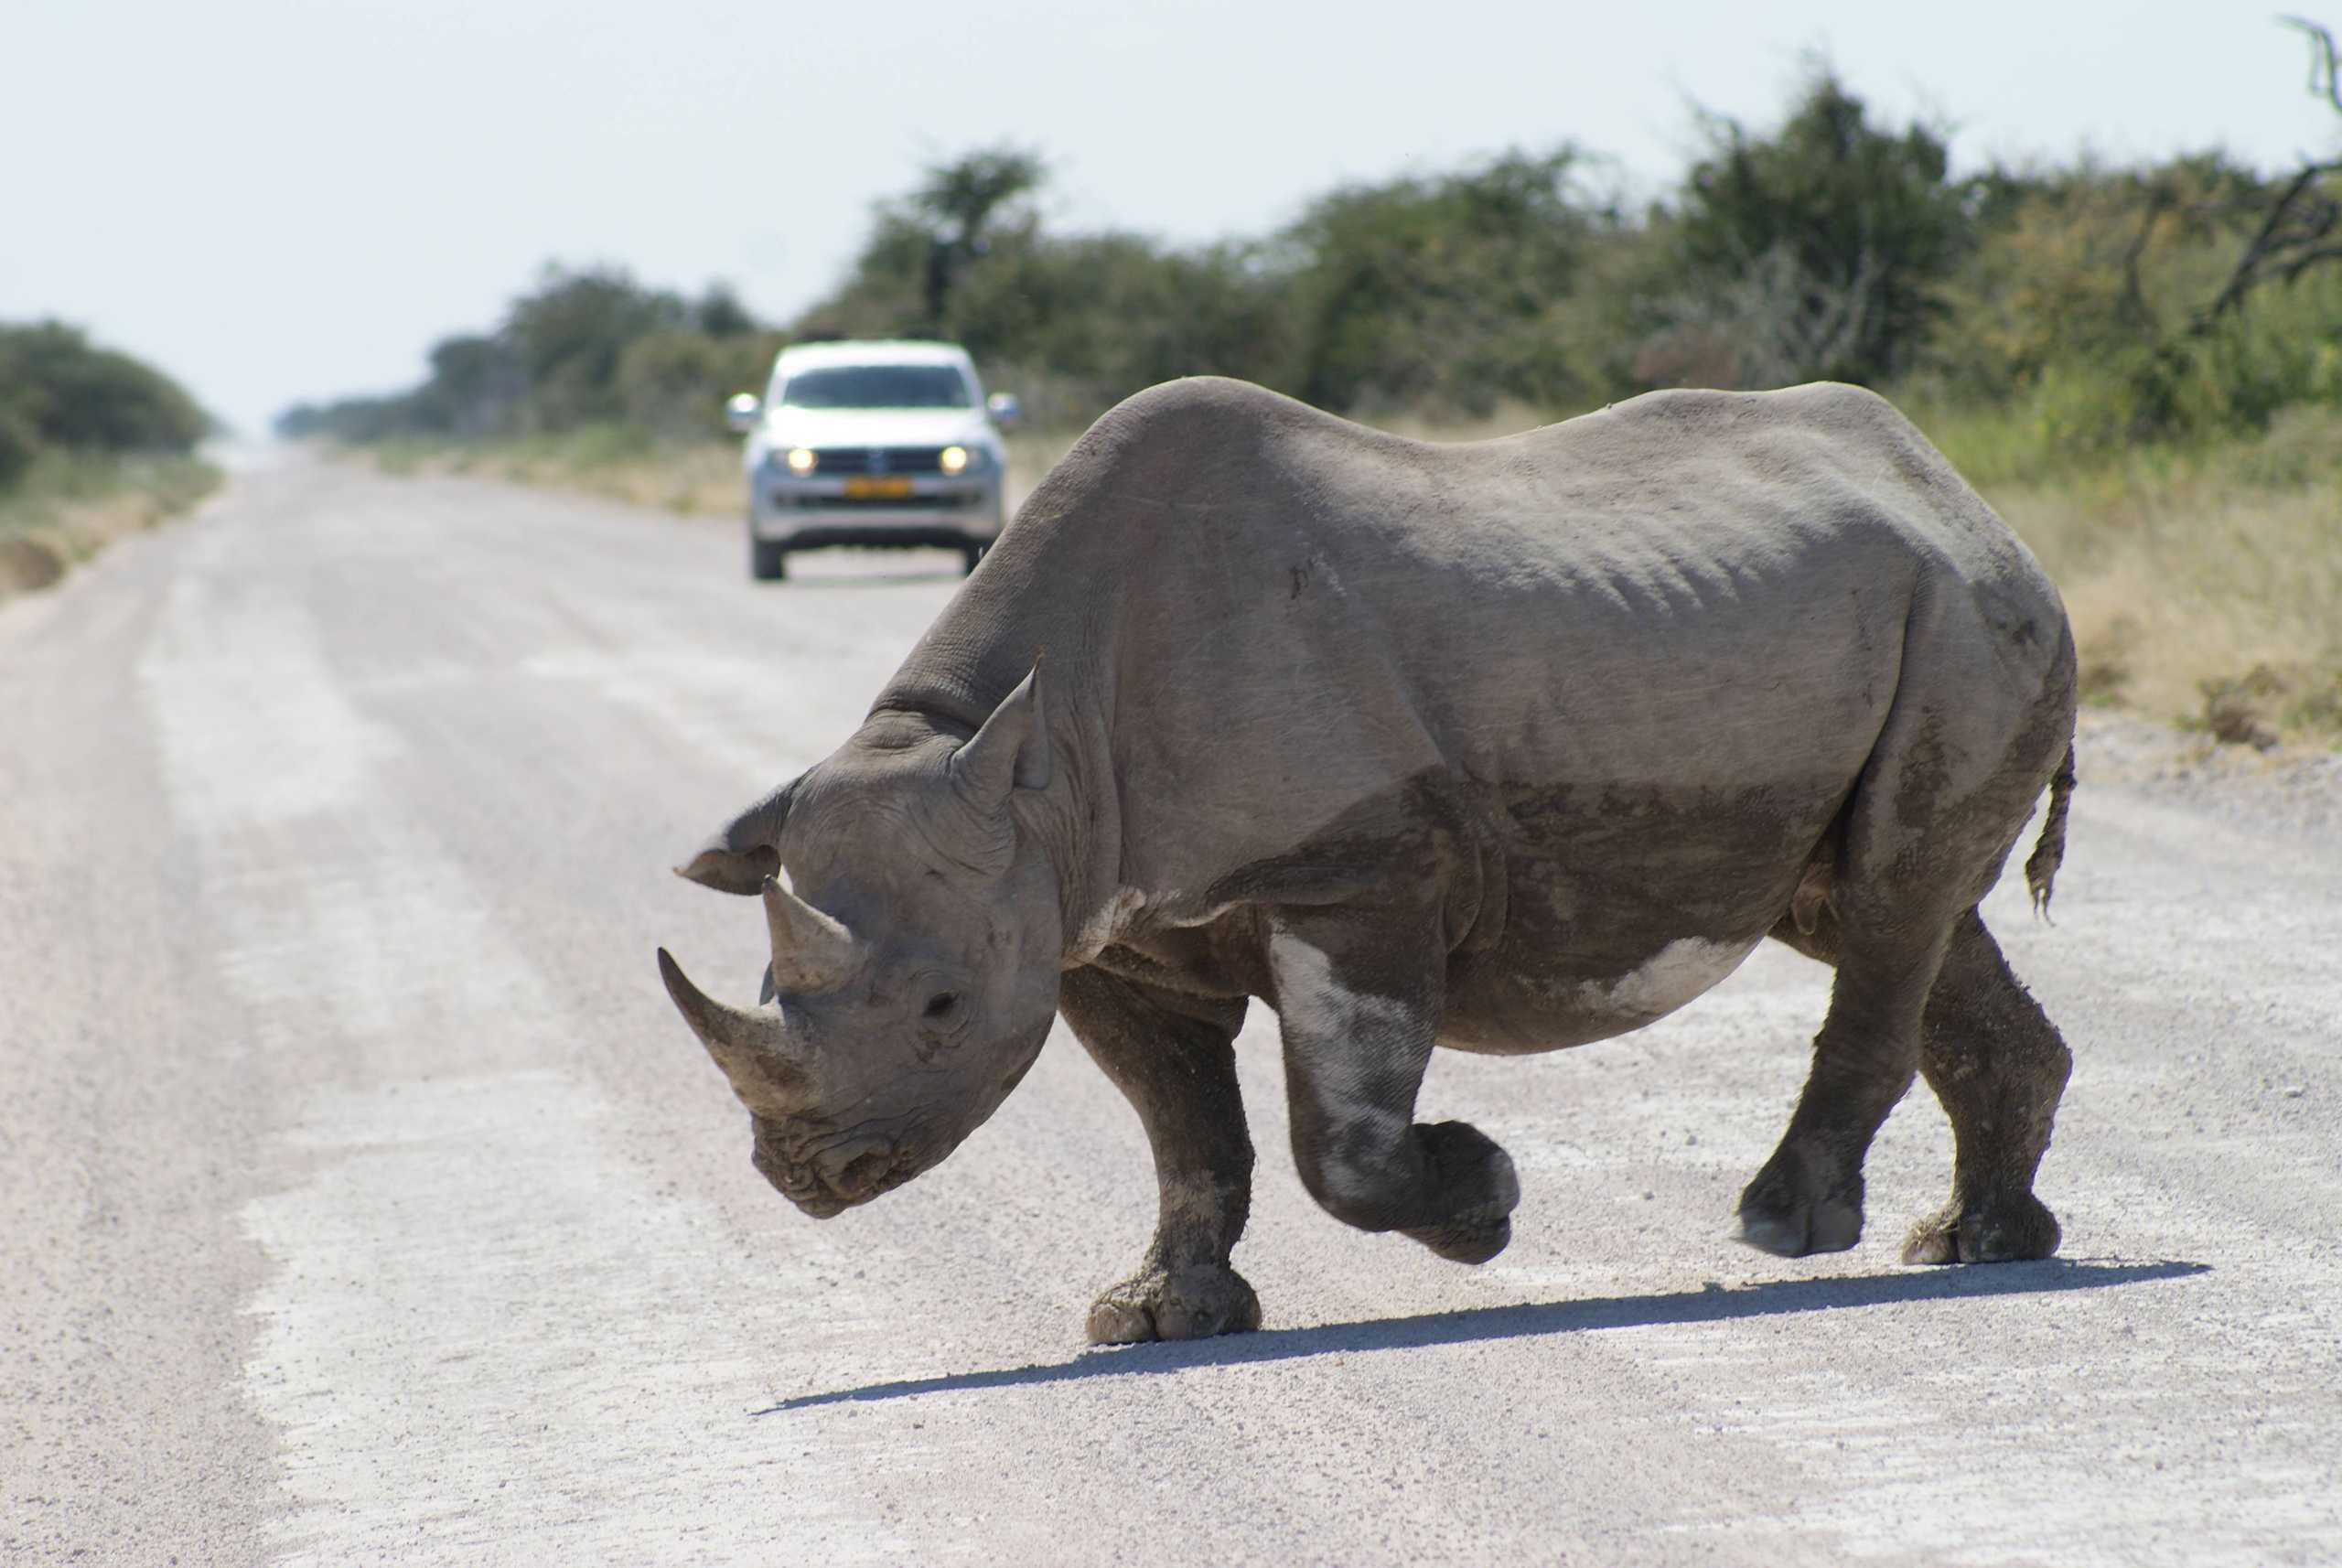 Rhino crossing, in Namibia